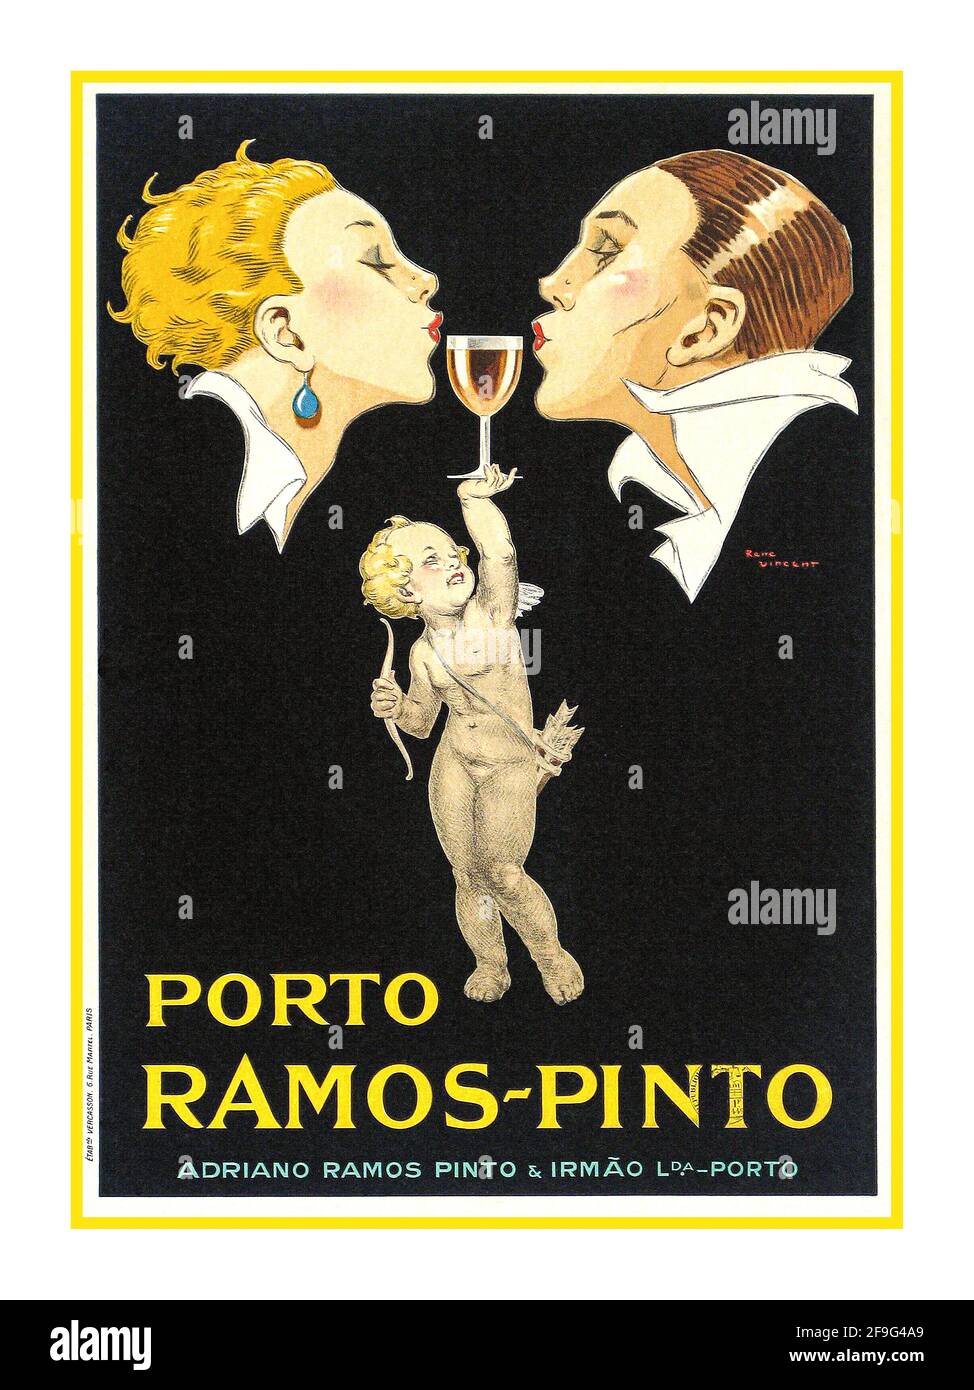 Das Vintageplakat der Getränke der 20er Jahre, das Ramos-Pinto Company Illustration von Rene Vincent, wirbt für Portwein mit zwei Liebhabern im Profil, die sich mit einem Glas Porto Ramos zwischen den Lippen ineinander lehnen. René Vincent (1879-1936) war ein französischer Illustrator, der in den 1920er- und 1930er-Jahren vorherrschte und im Art déco-Stil arbeitete. Vincent hatte einen dynamischen Grafikdesign-Stil. Er war einflussreich in der Art déco-Bewegung. Stockfoto